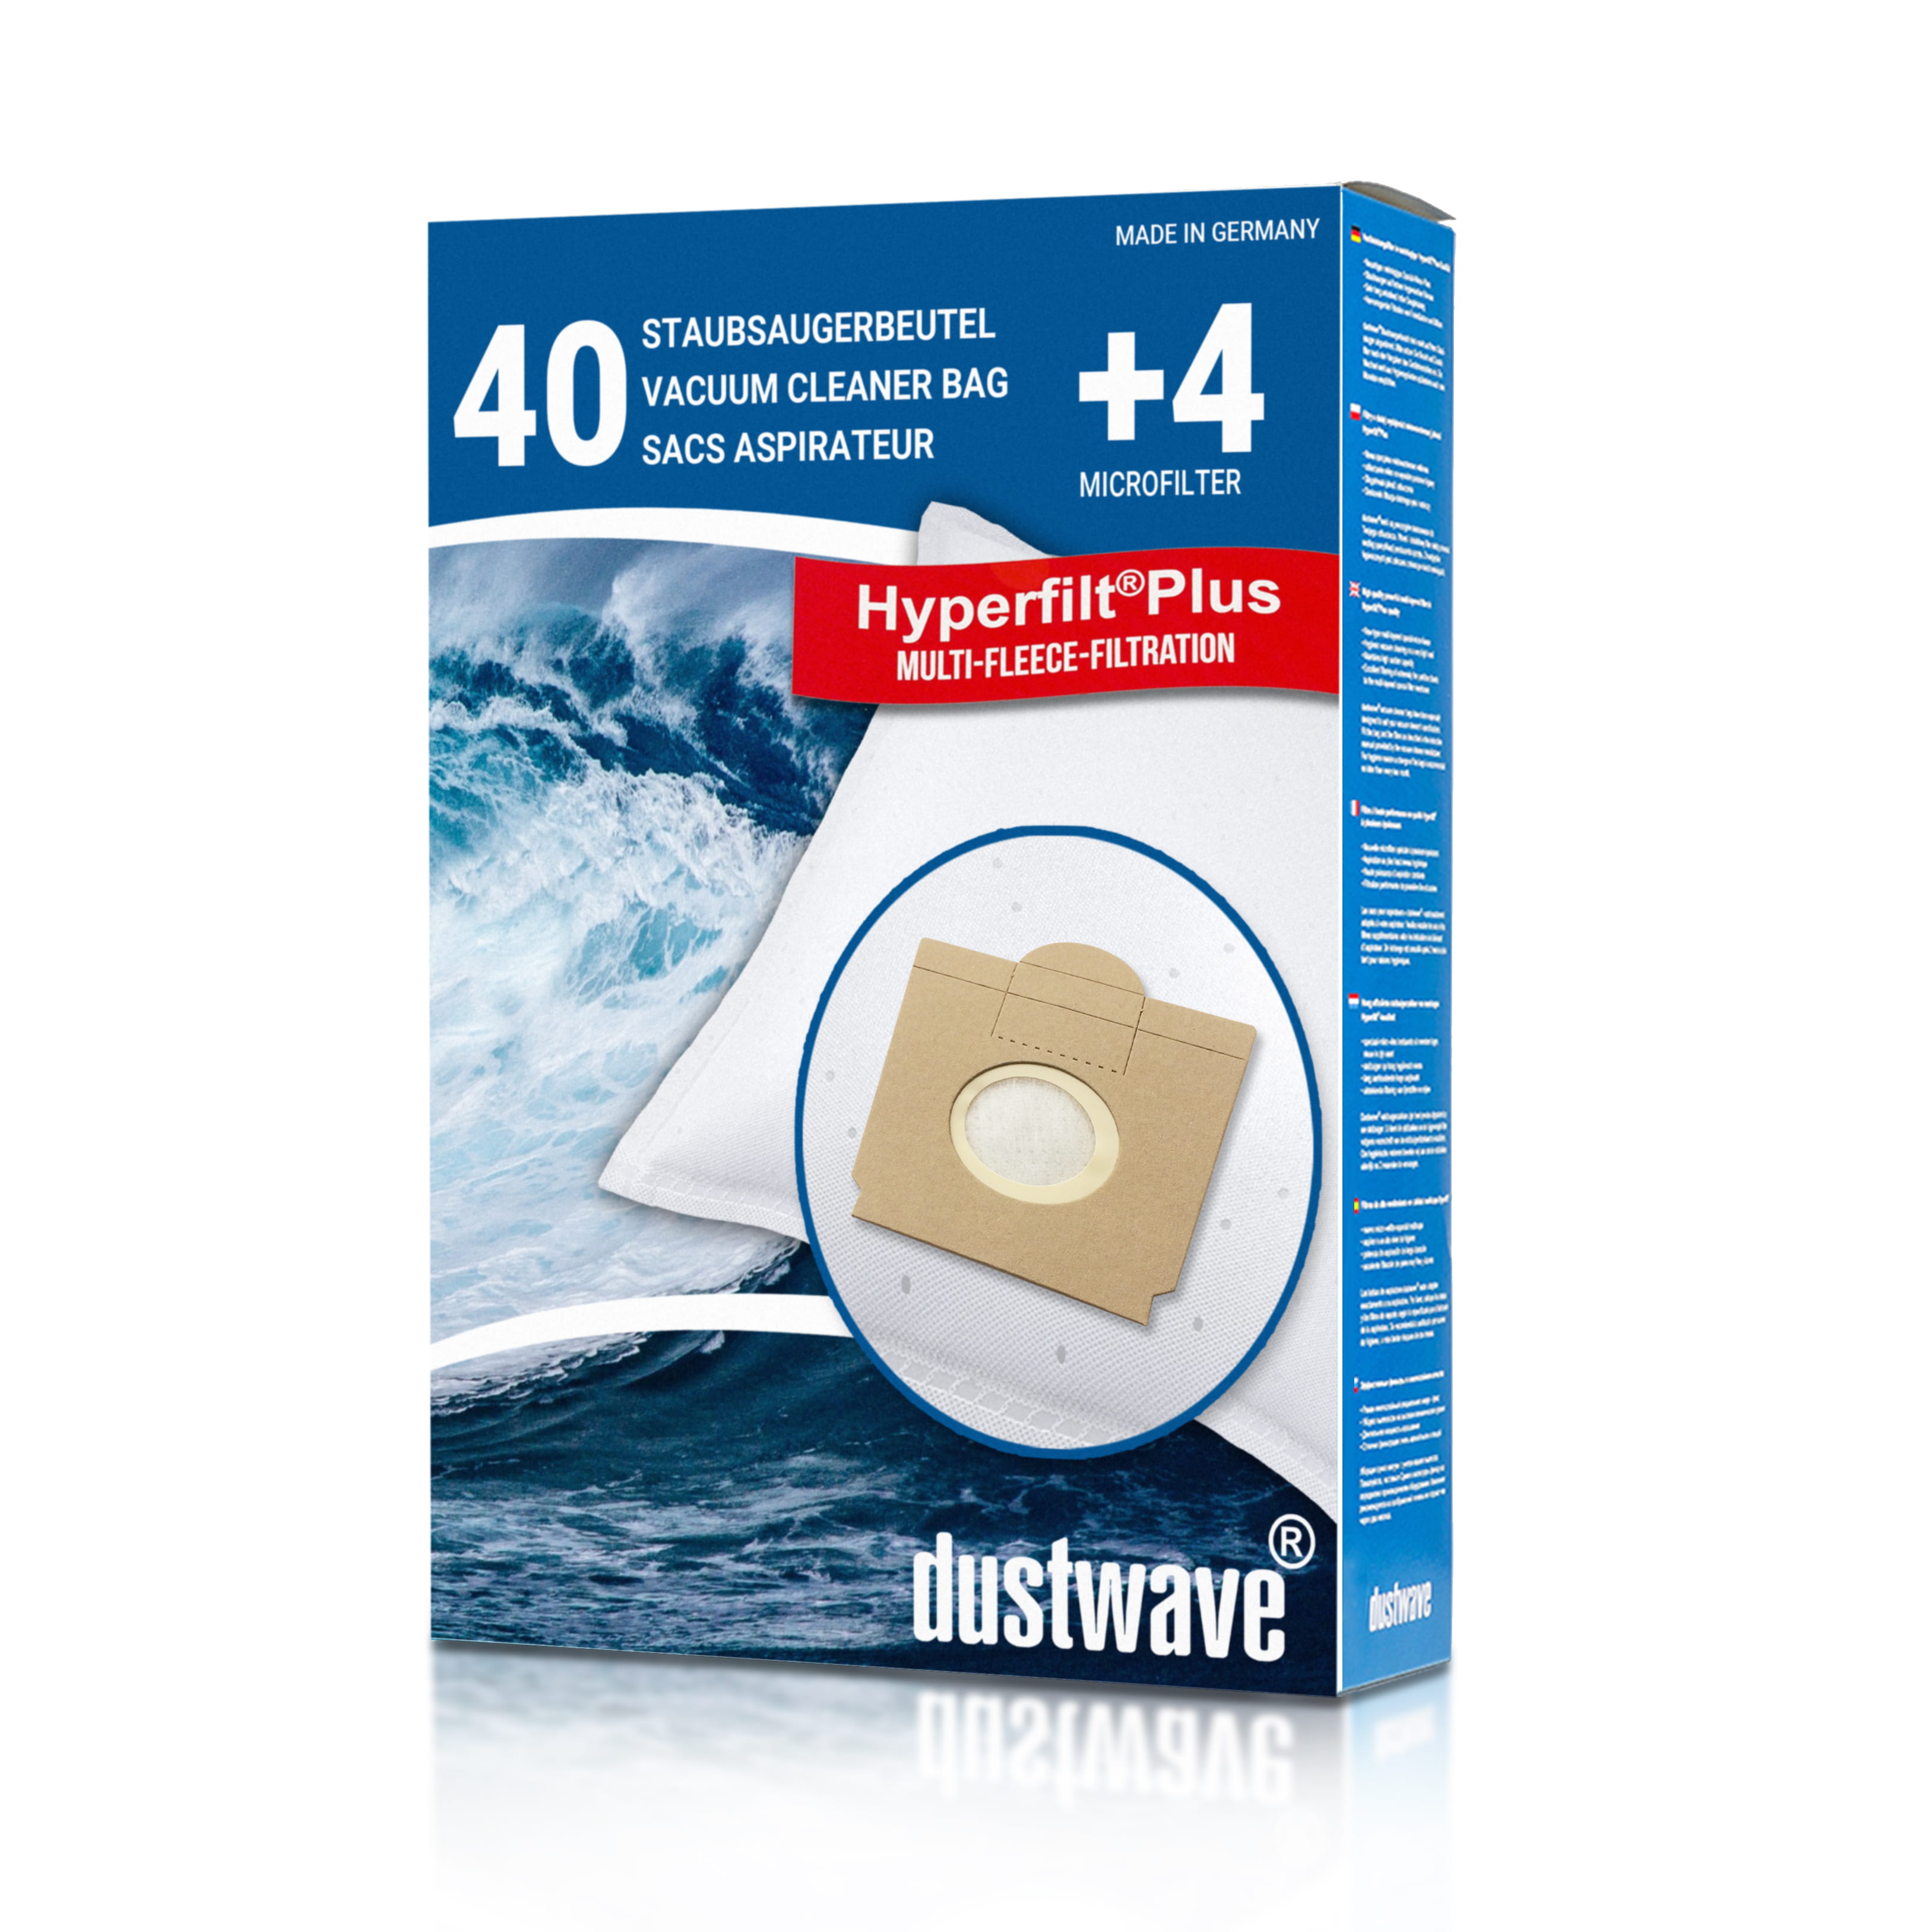 Dustwave® 40 Staubsaugerbeutel für SWIRL S 64 - hocheffizient, mehrlagiges Mikrovlies mit Hygieneverschluss - Made in Germany